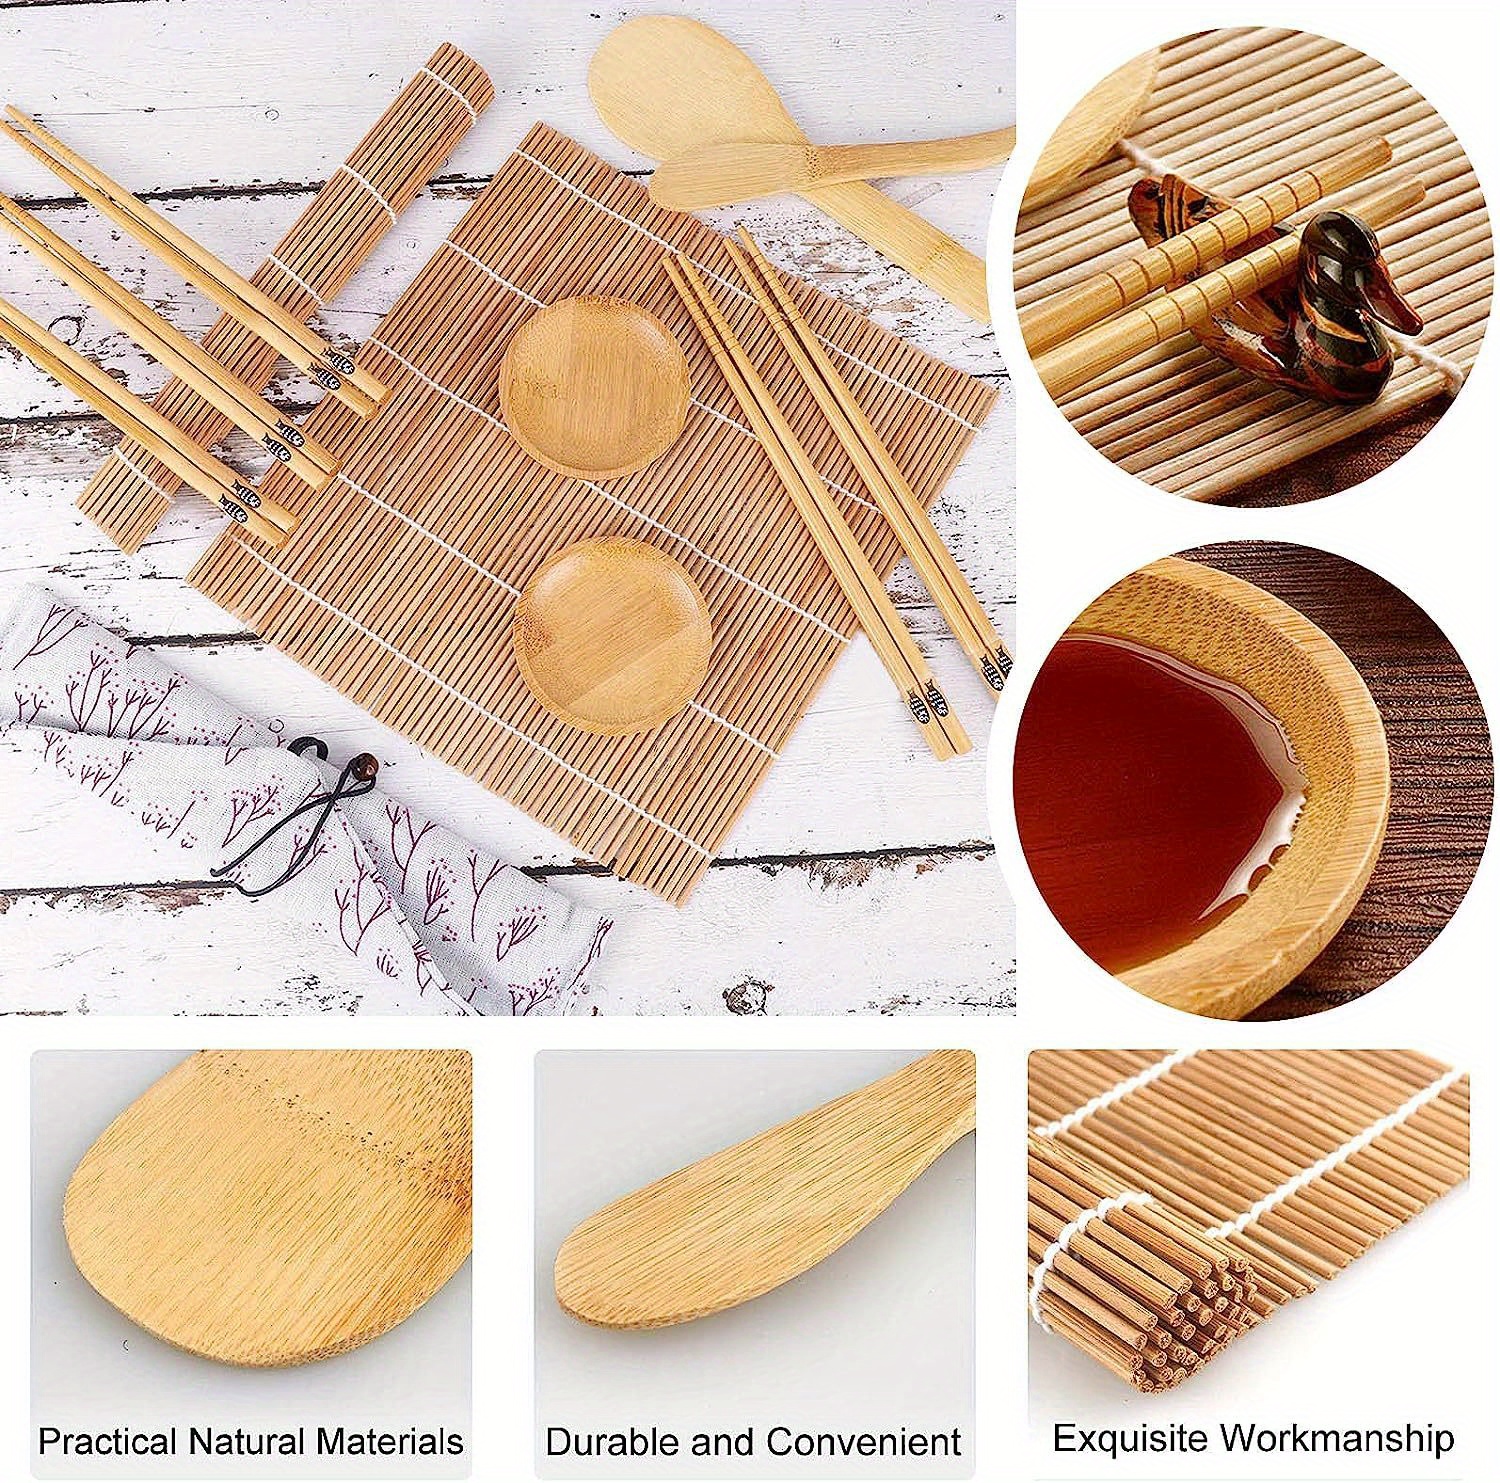 Kit para hacer sushi ISSEVE, tapete de sushi de bambú, bazuca de sushi todo  en uno con tapetes de bambú, palillos de bambú, paleta, esparcidor